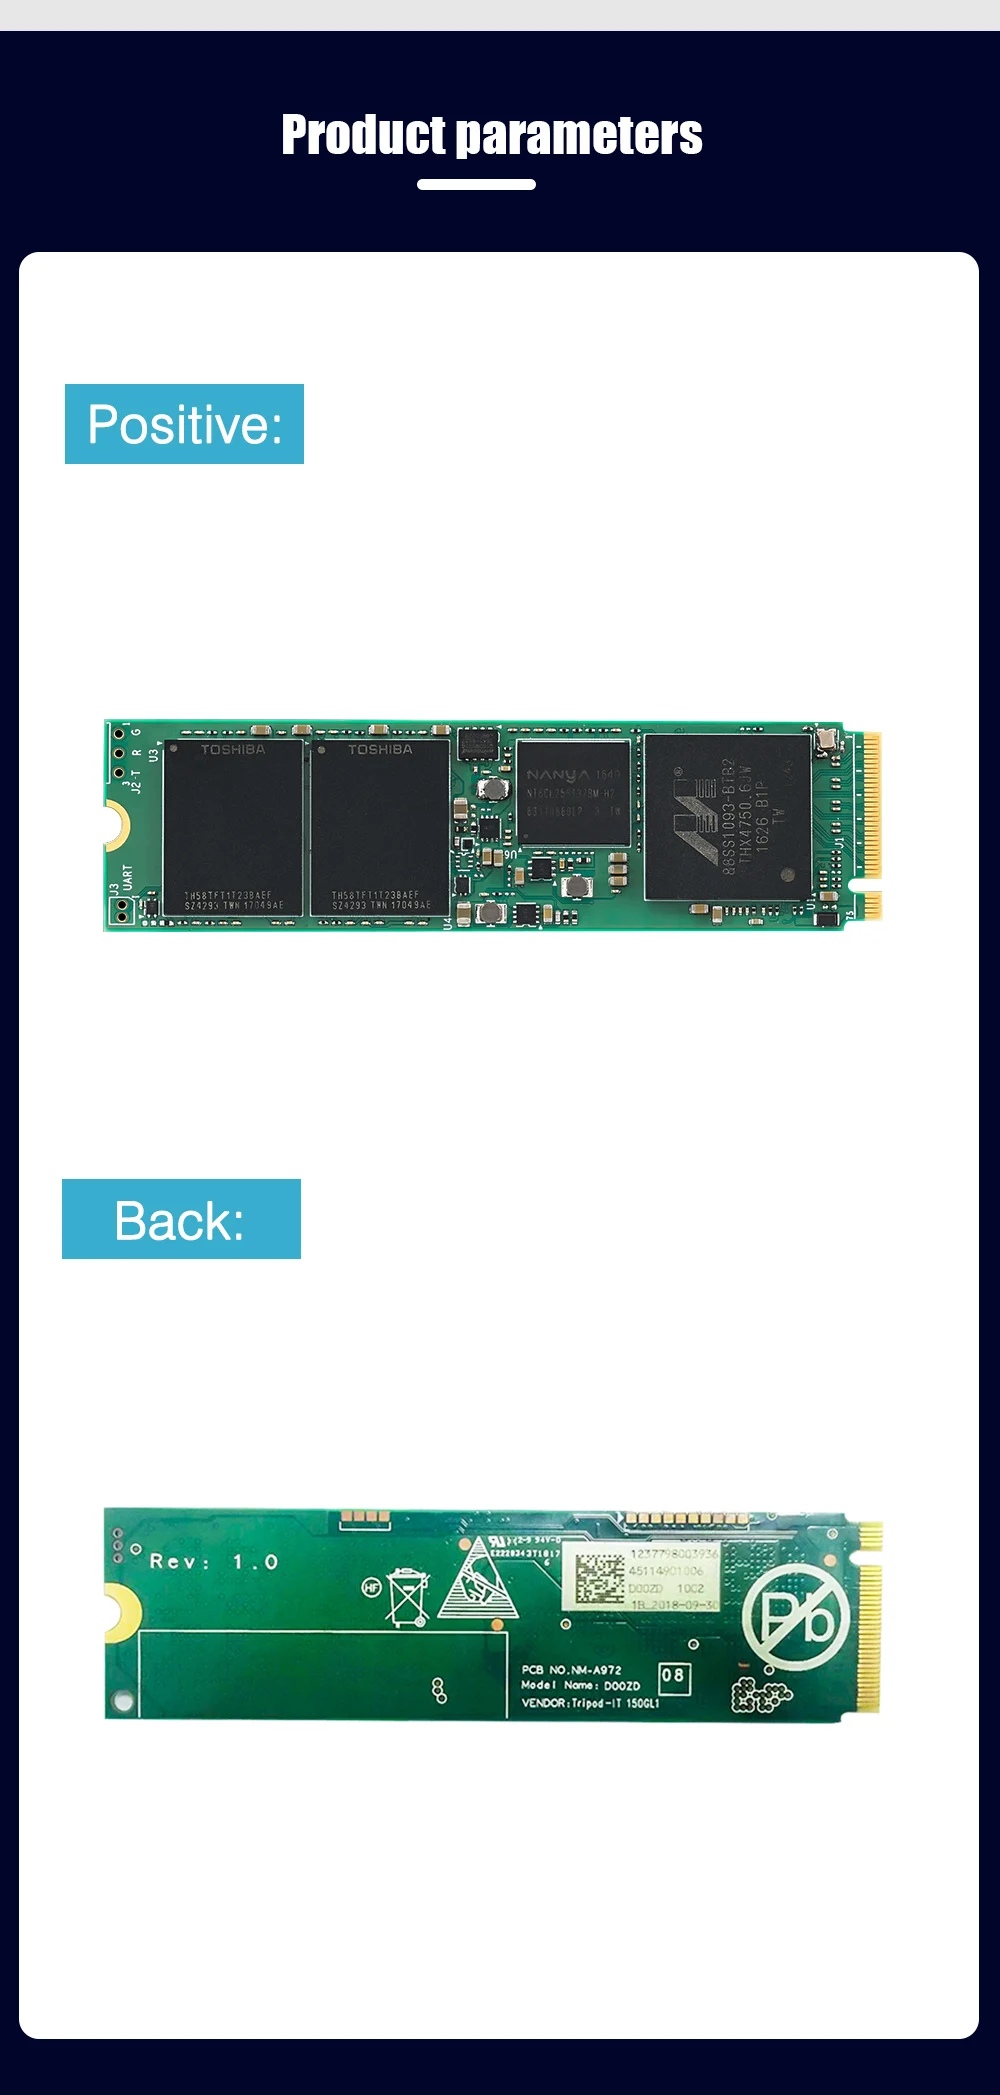 Reeinno M.2 SSD G супер Скорость 8 ГБ/сек. PCIe NVMe 2280 256 г/512 г/1 ТБ Marvell контроллер dram-кэша твердотельный накопитель ноутбука, настольного компьютера